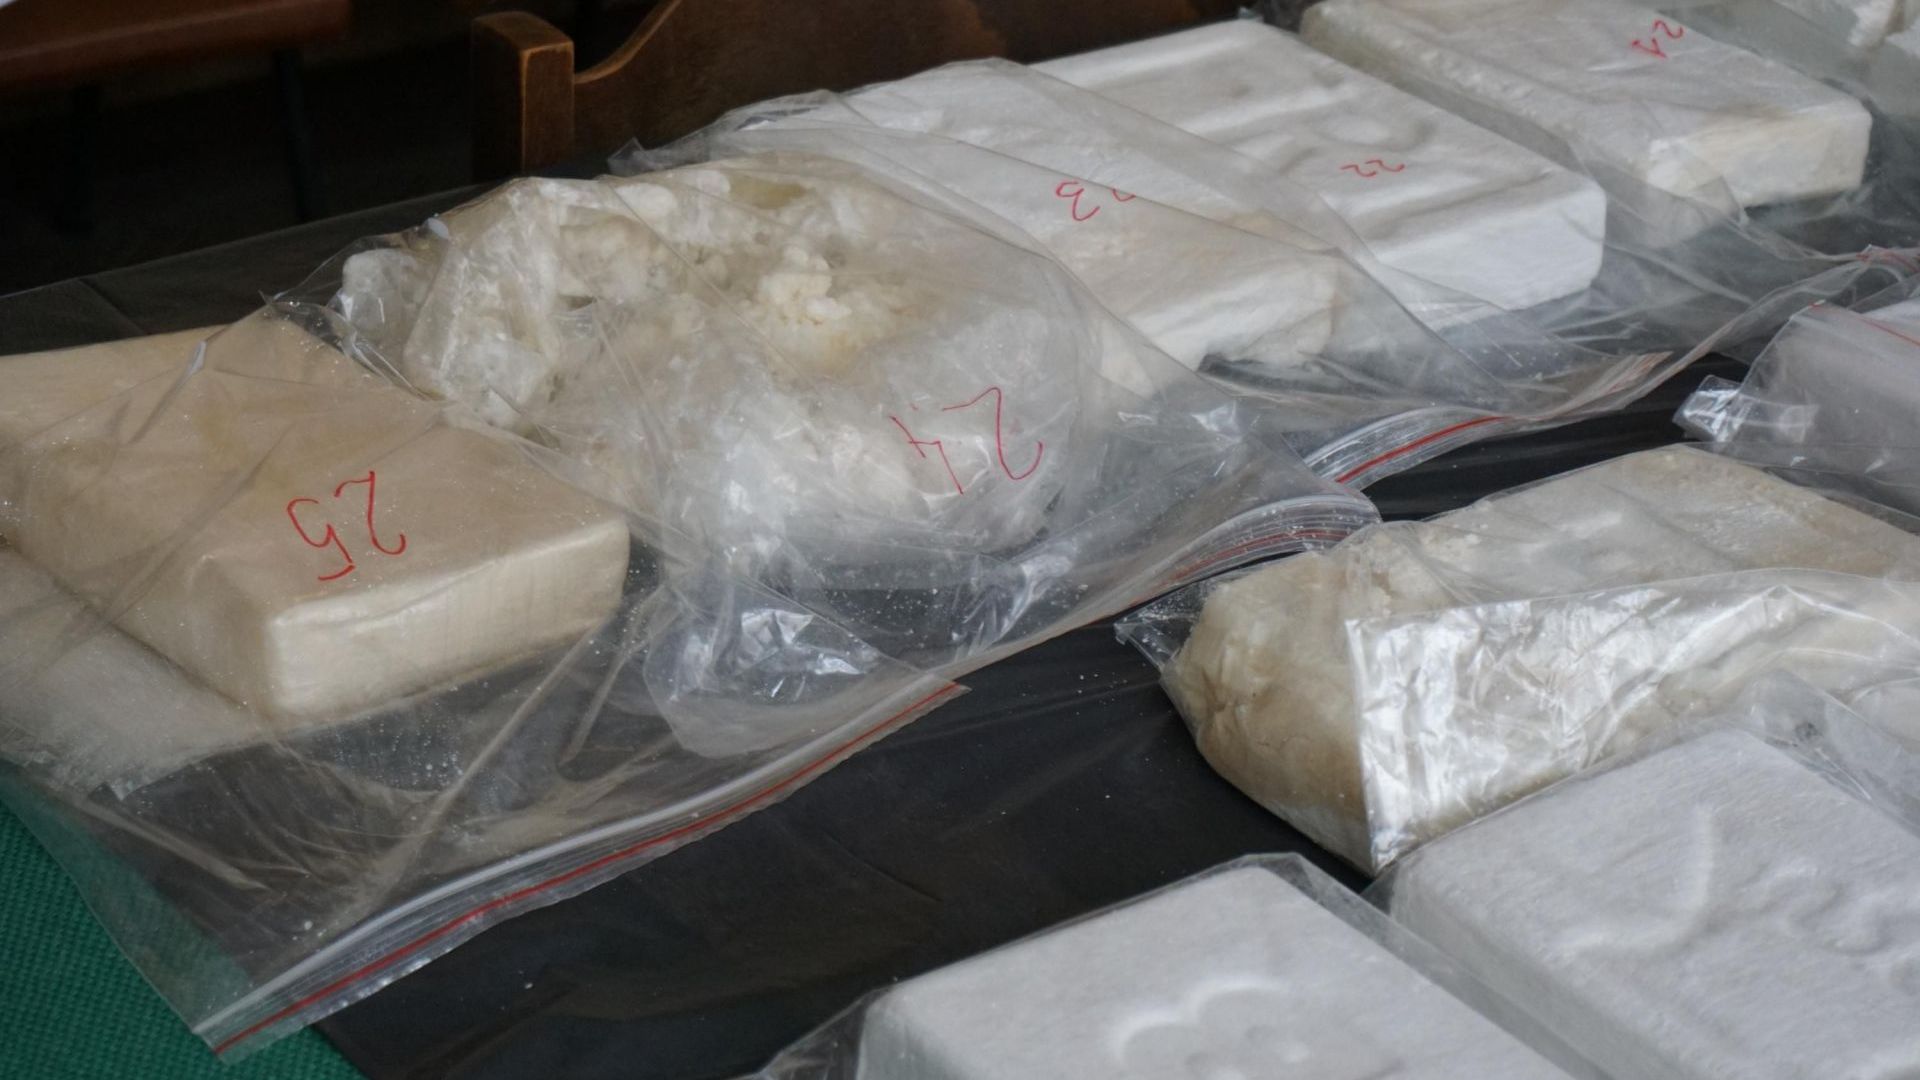 Словенската полиция залови 230 кг кокаин и арестува 9 души